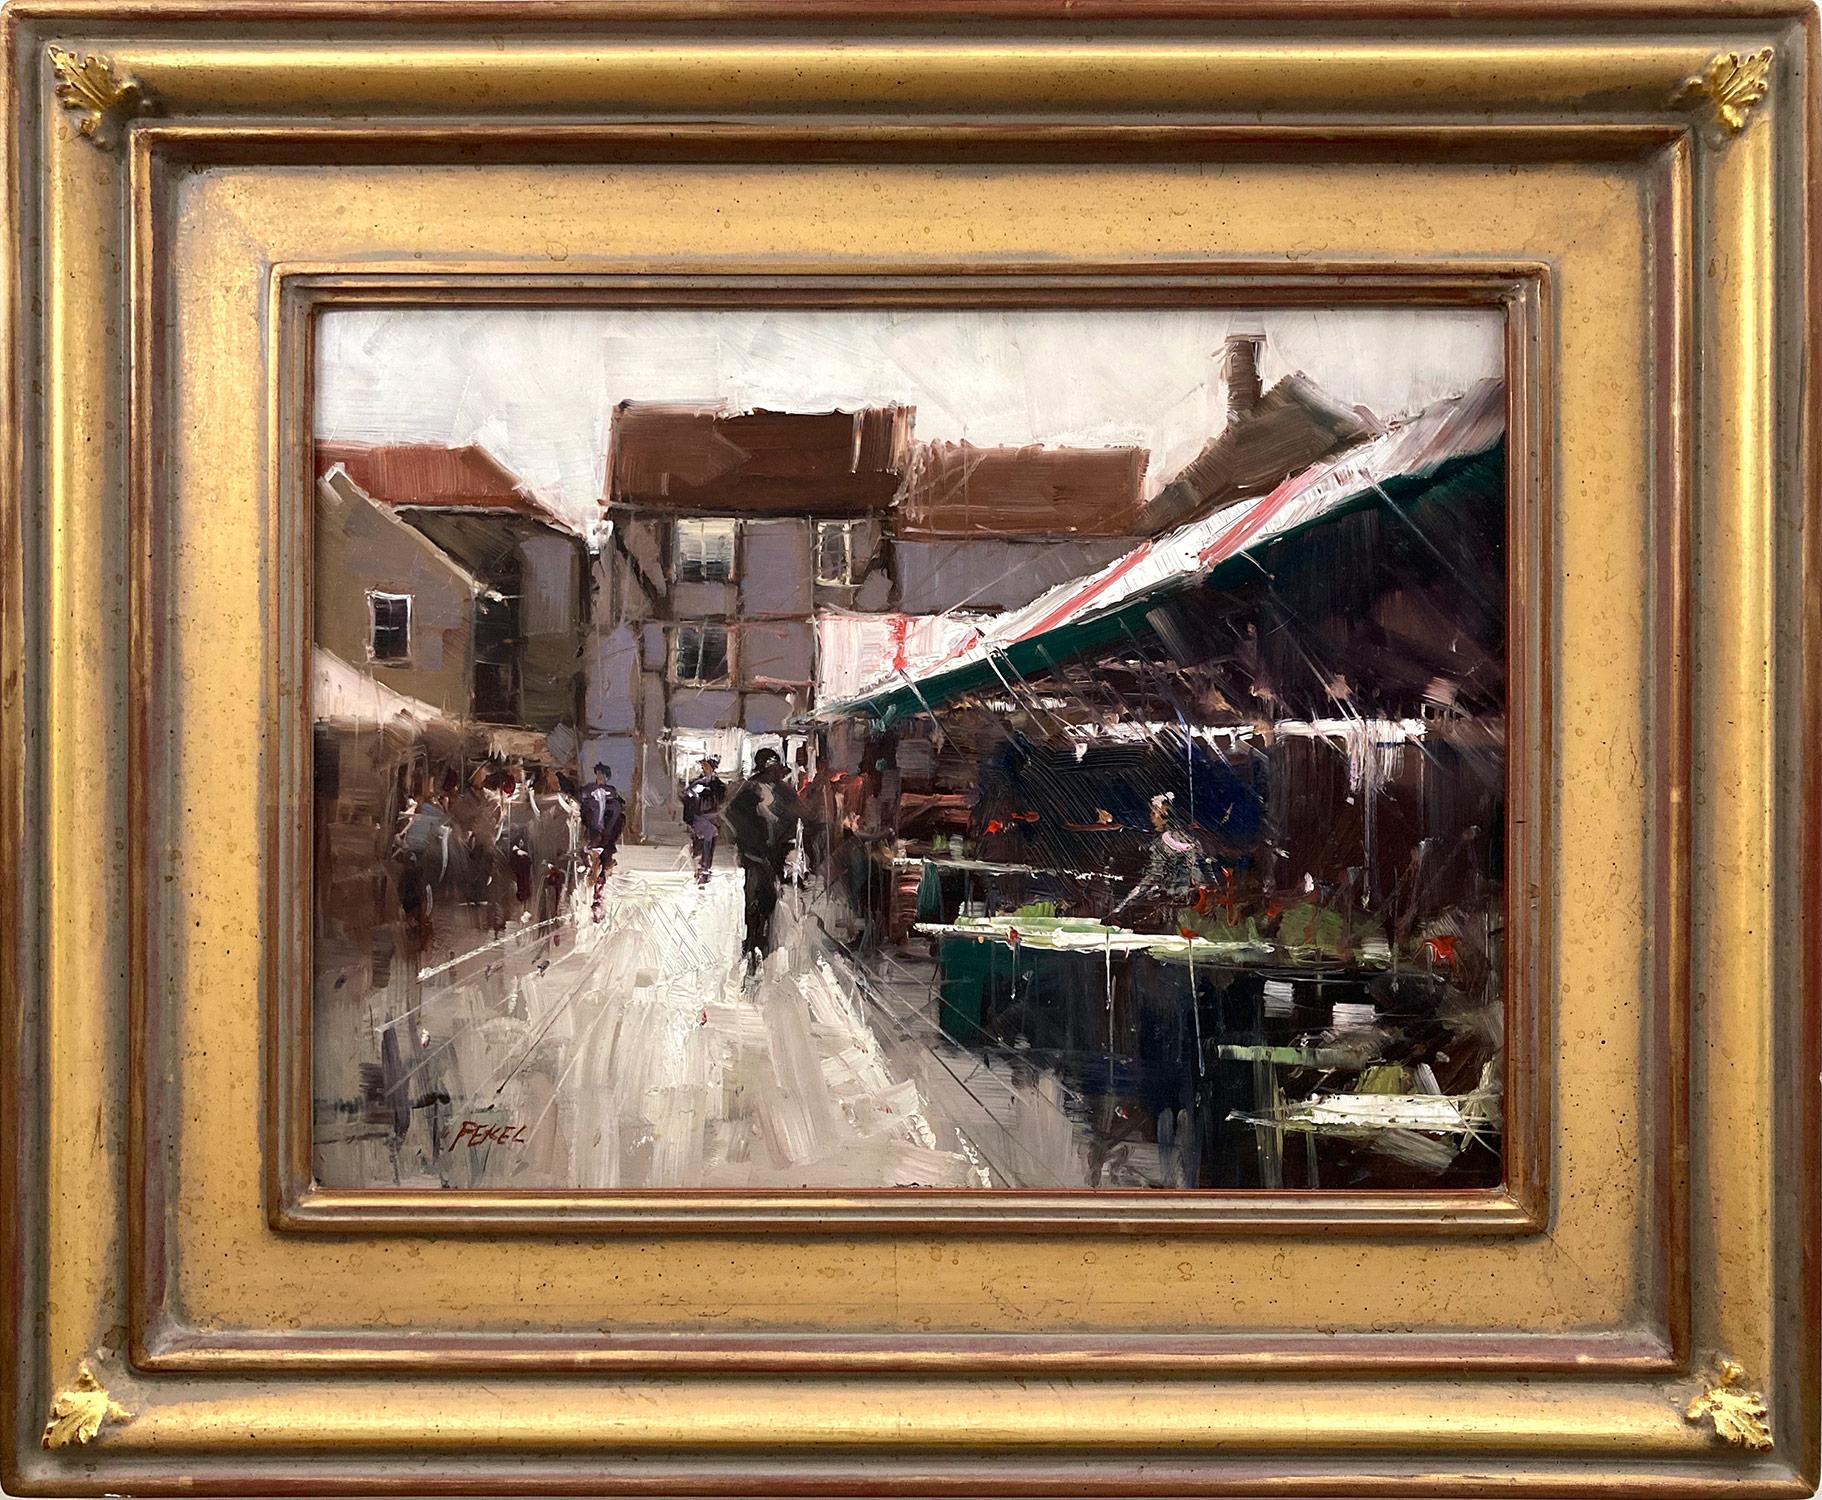 Figurative Painting Herman Pekel - Peinture à l'huile abstraite en plein air du 20e siècle, « York Market England » 